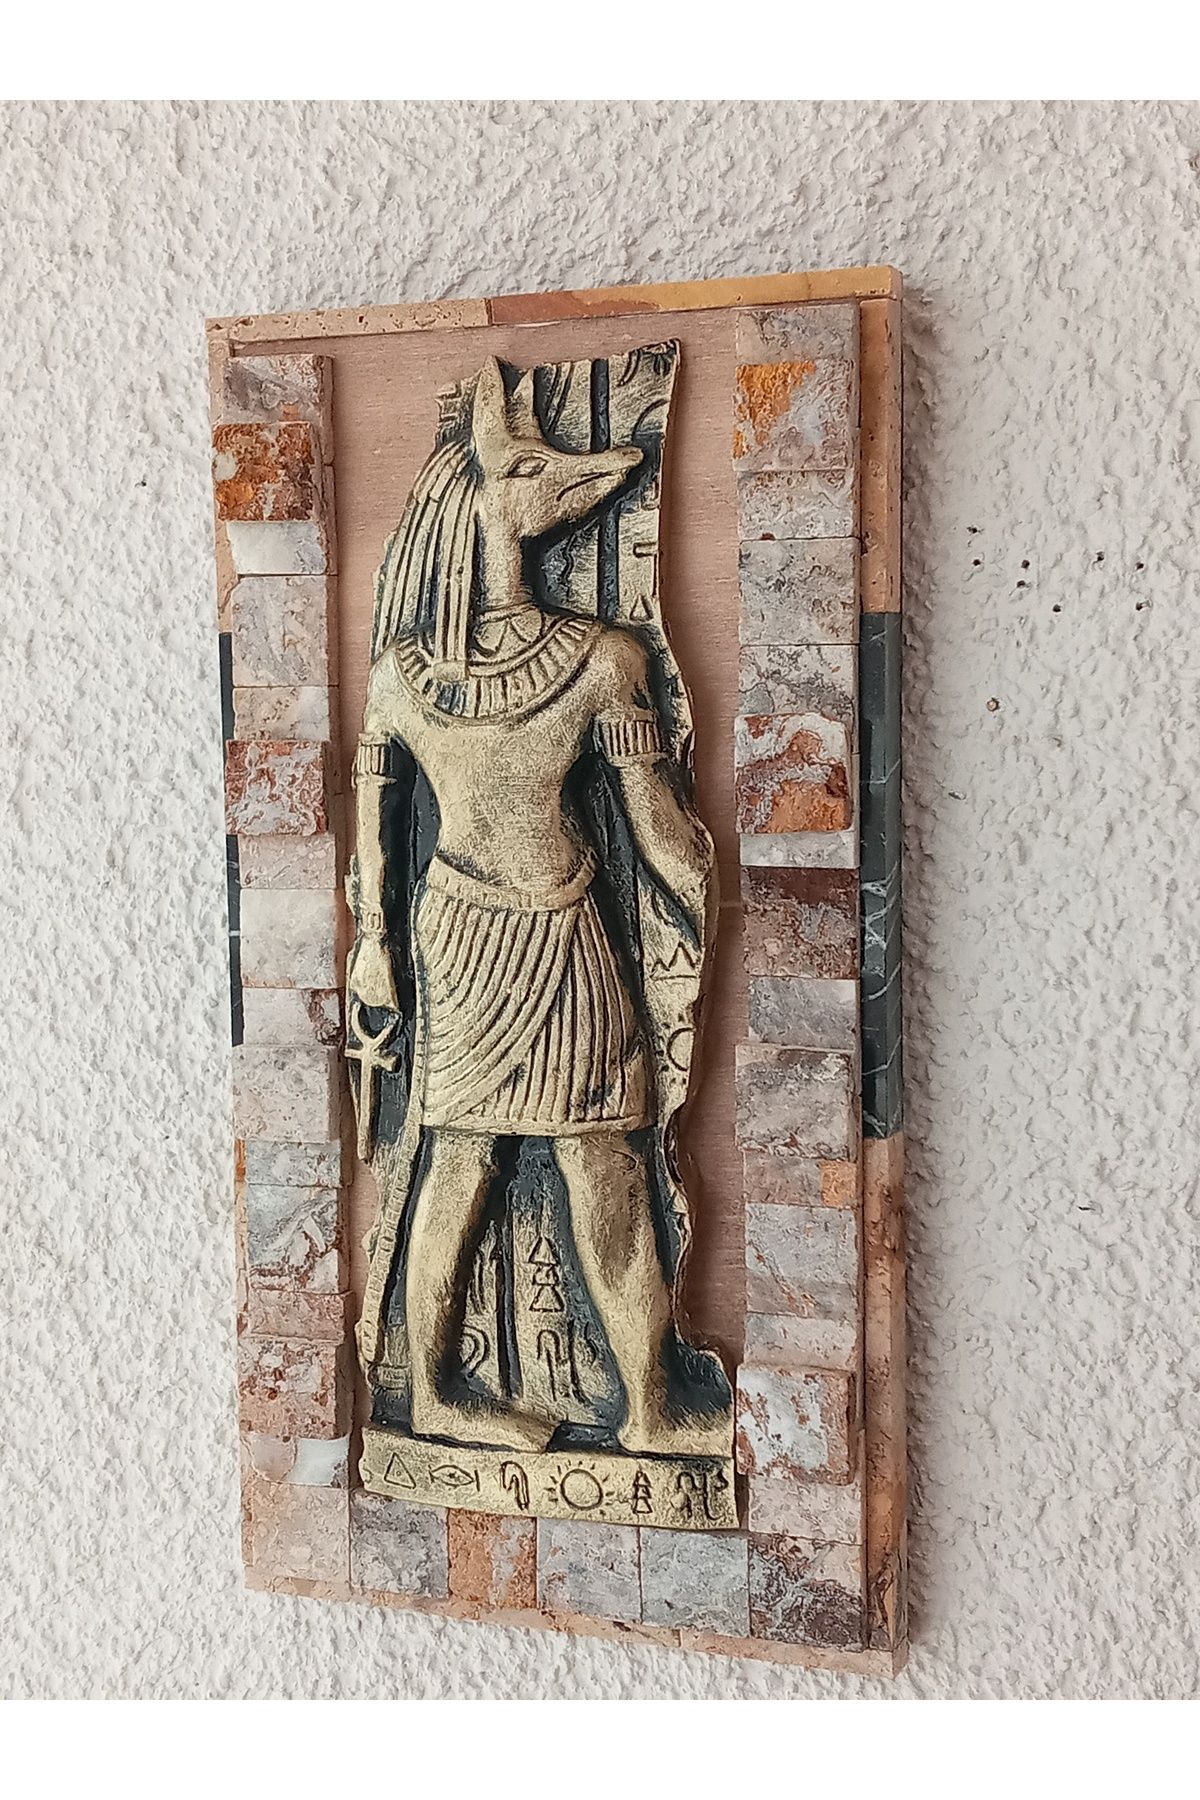 GÖKÇEN HOBİ Anubis (Anpu) Antik Mısır Ölüm ve Cenaze Tanrısı Taşlı Duvar Biblo